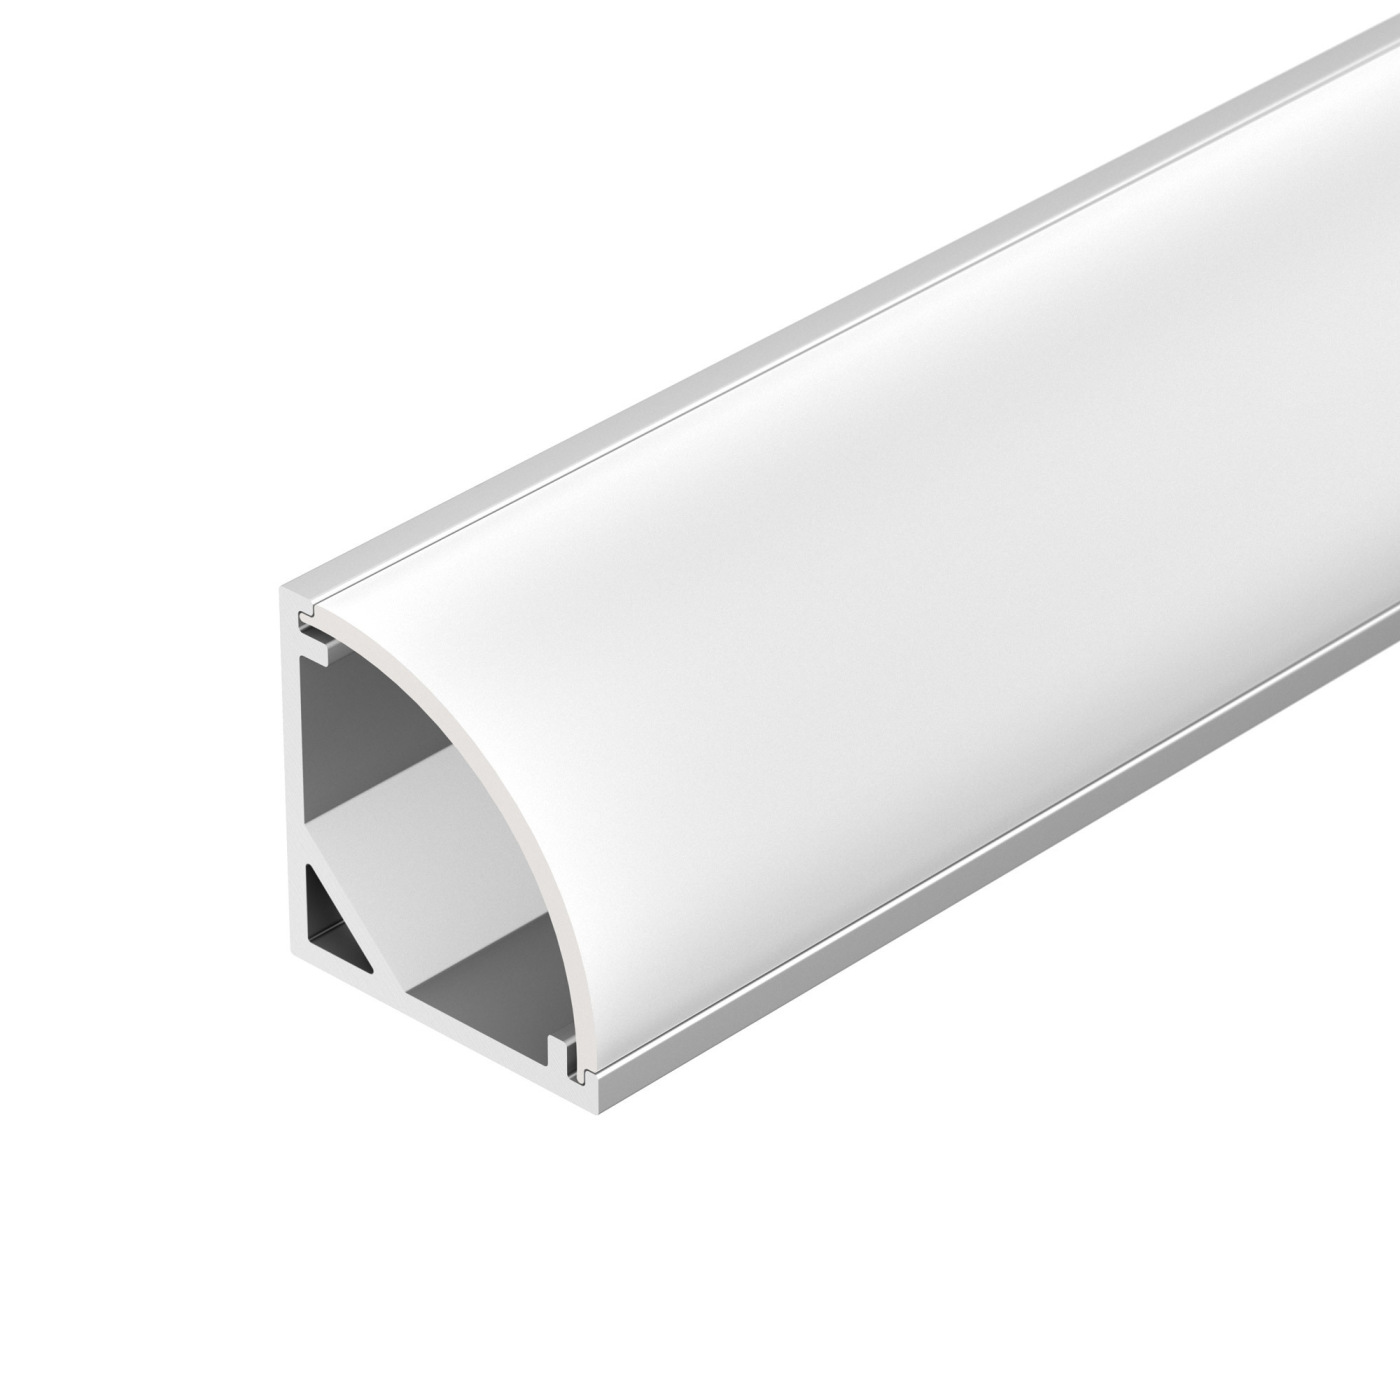 Профиль SL-KANT-H16-3000 ANOD (Arlight, Алюминий) профиль алюминиевый угловой квадратный серебро cab281